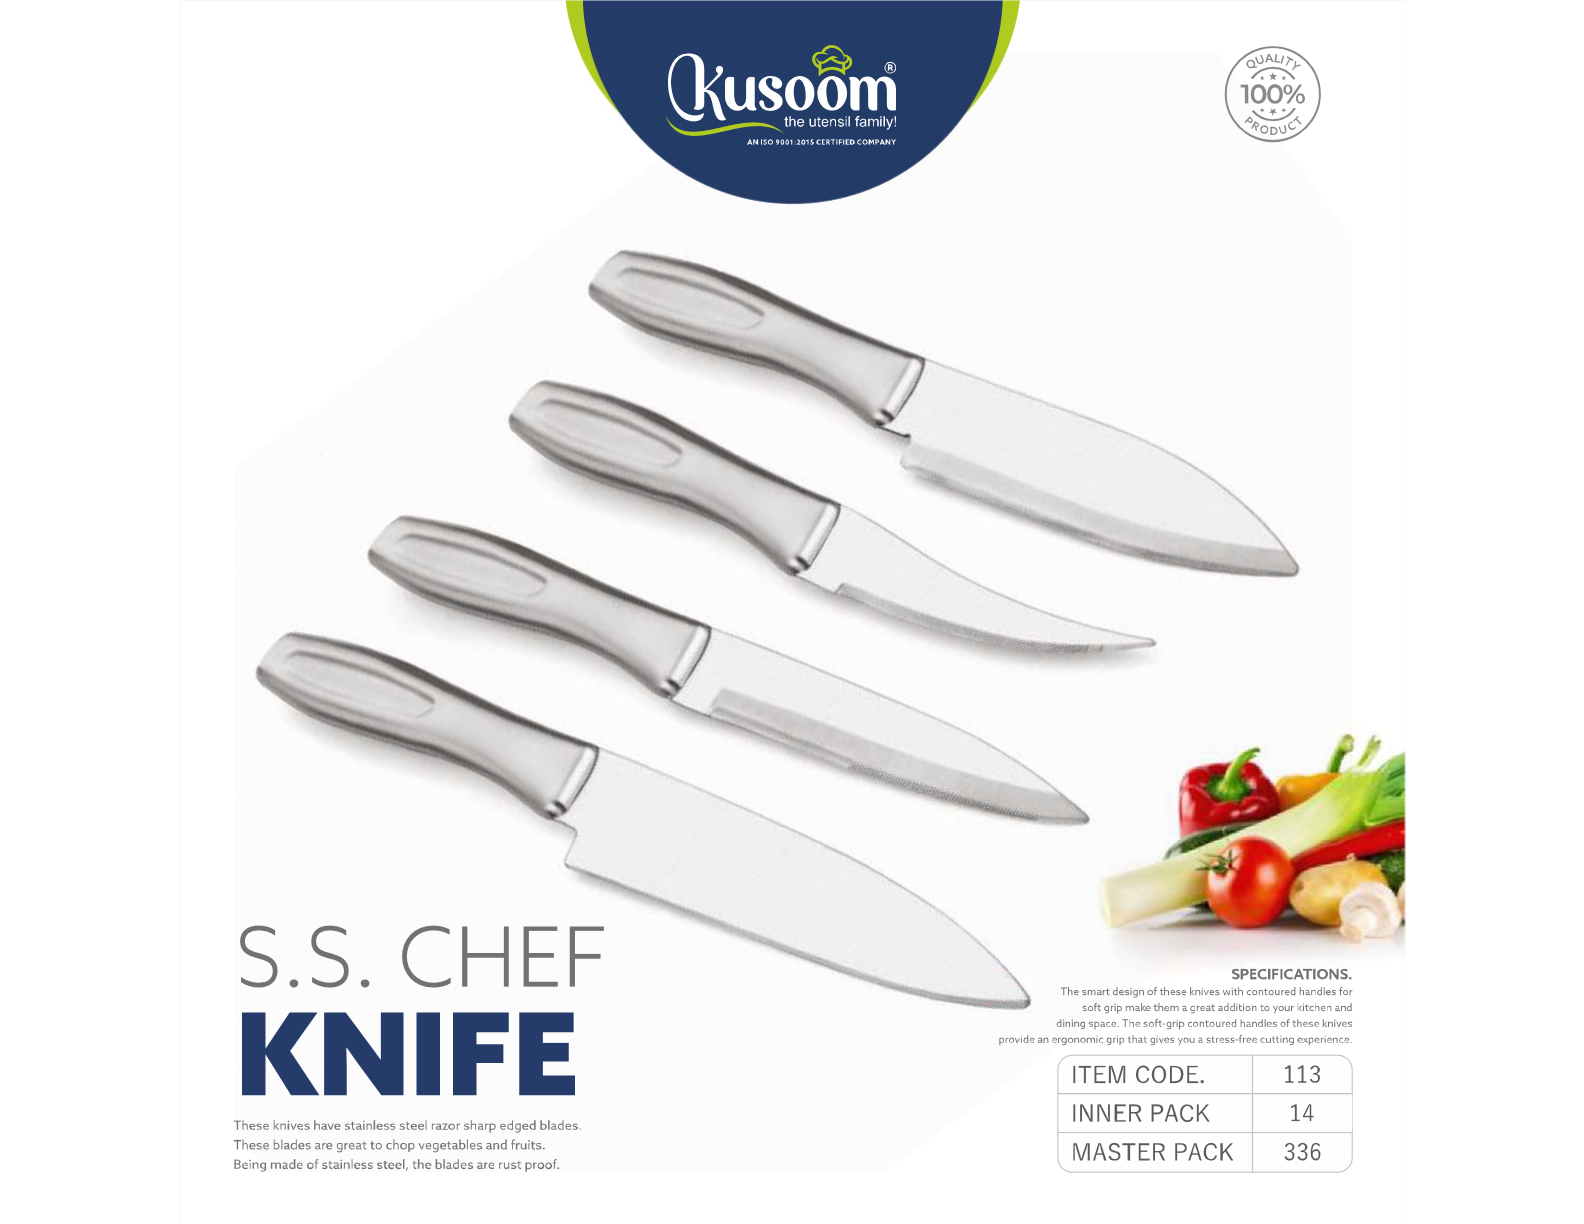 Kusoom s.s. chef knife